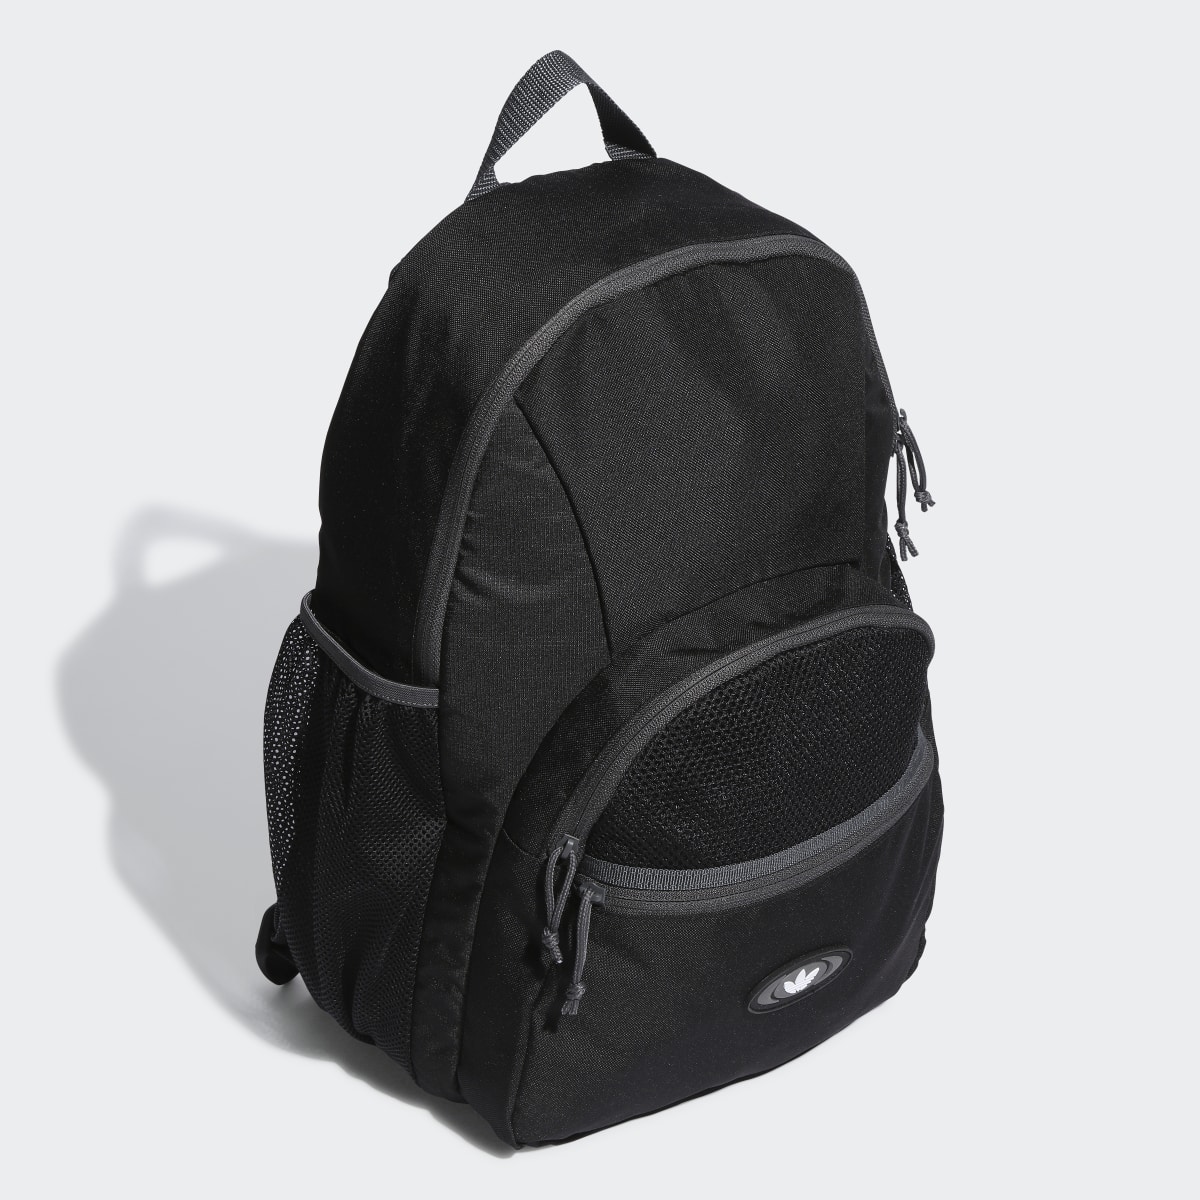 Adidas Rekive Backpack. 4